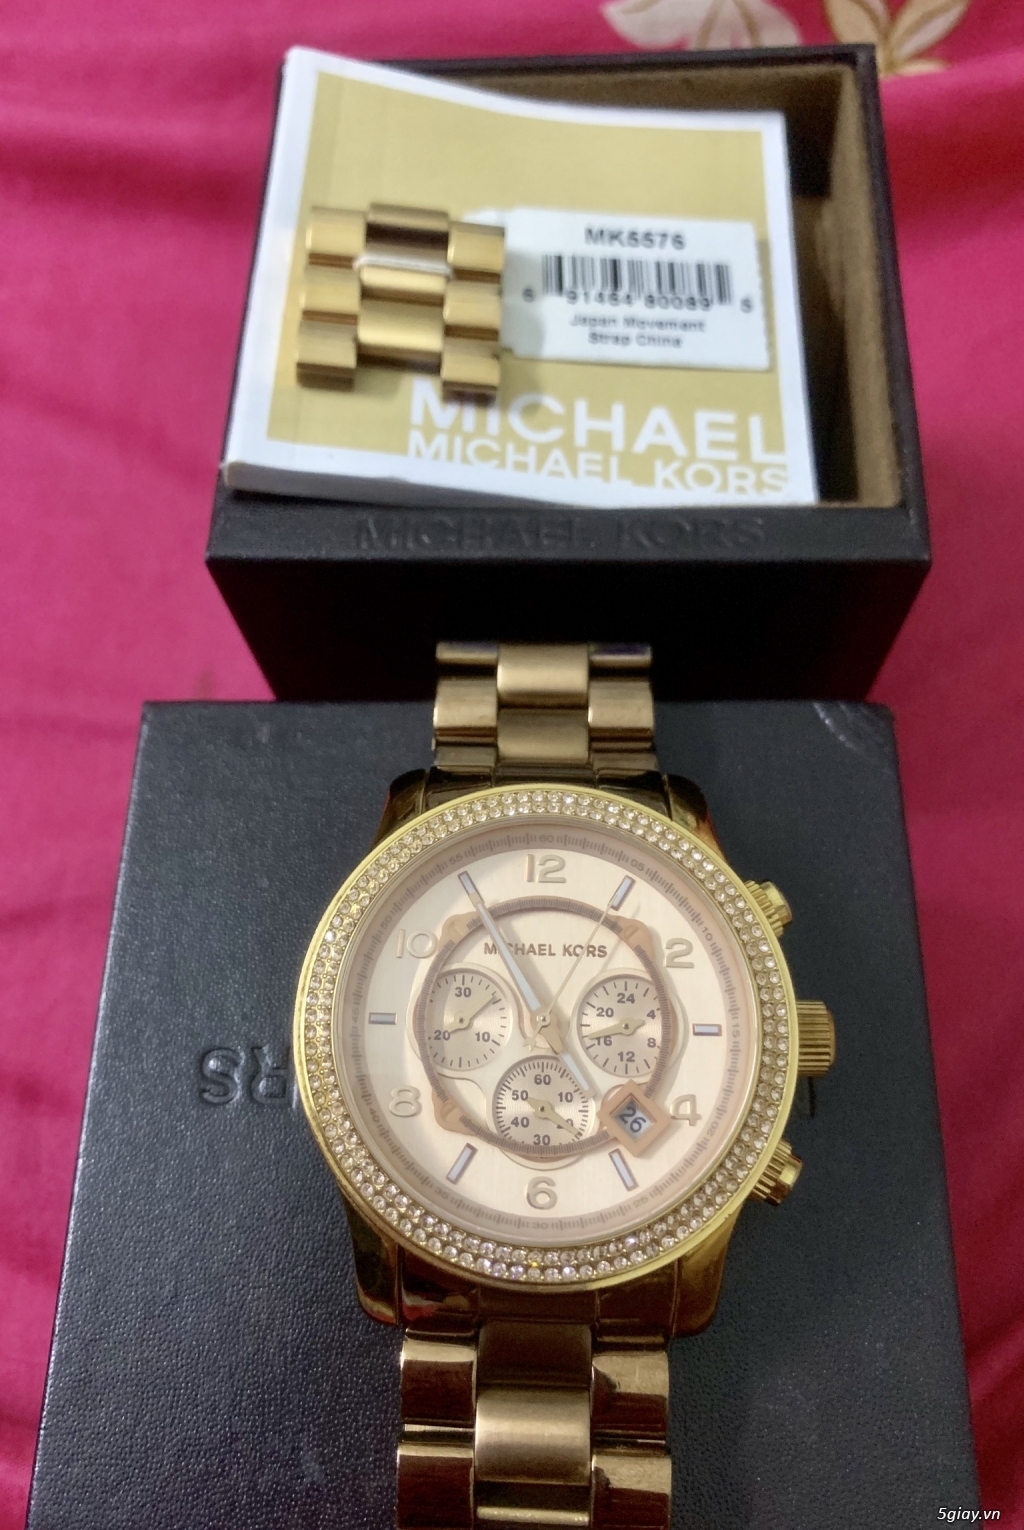 Đồng hồ Michael Kors 5576 auth% full box.Endtime:22h40 ngày 28/08/2019. - 1